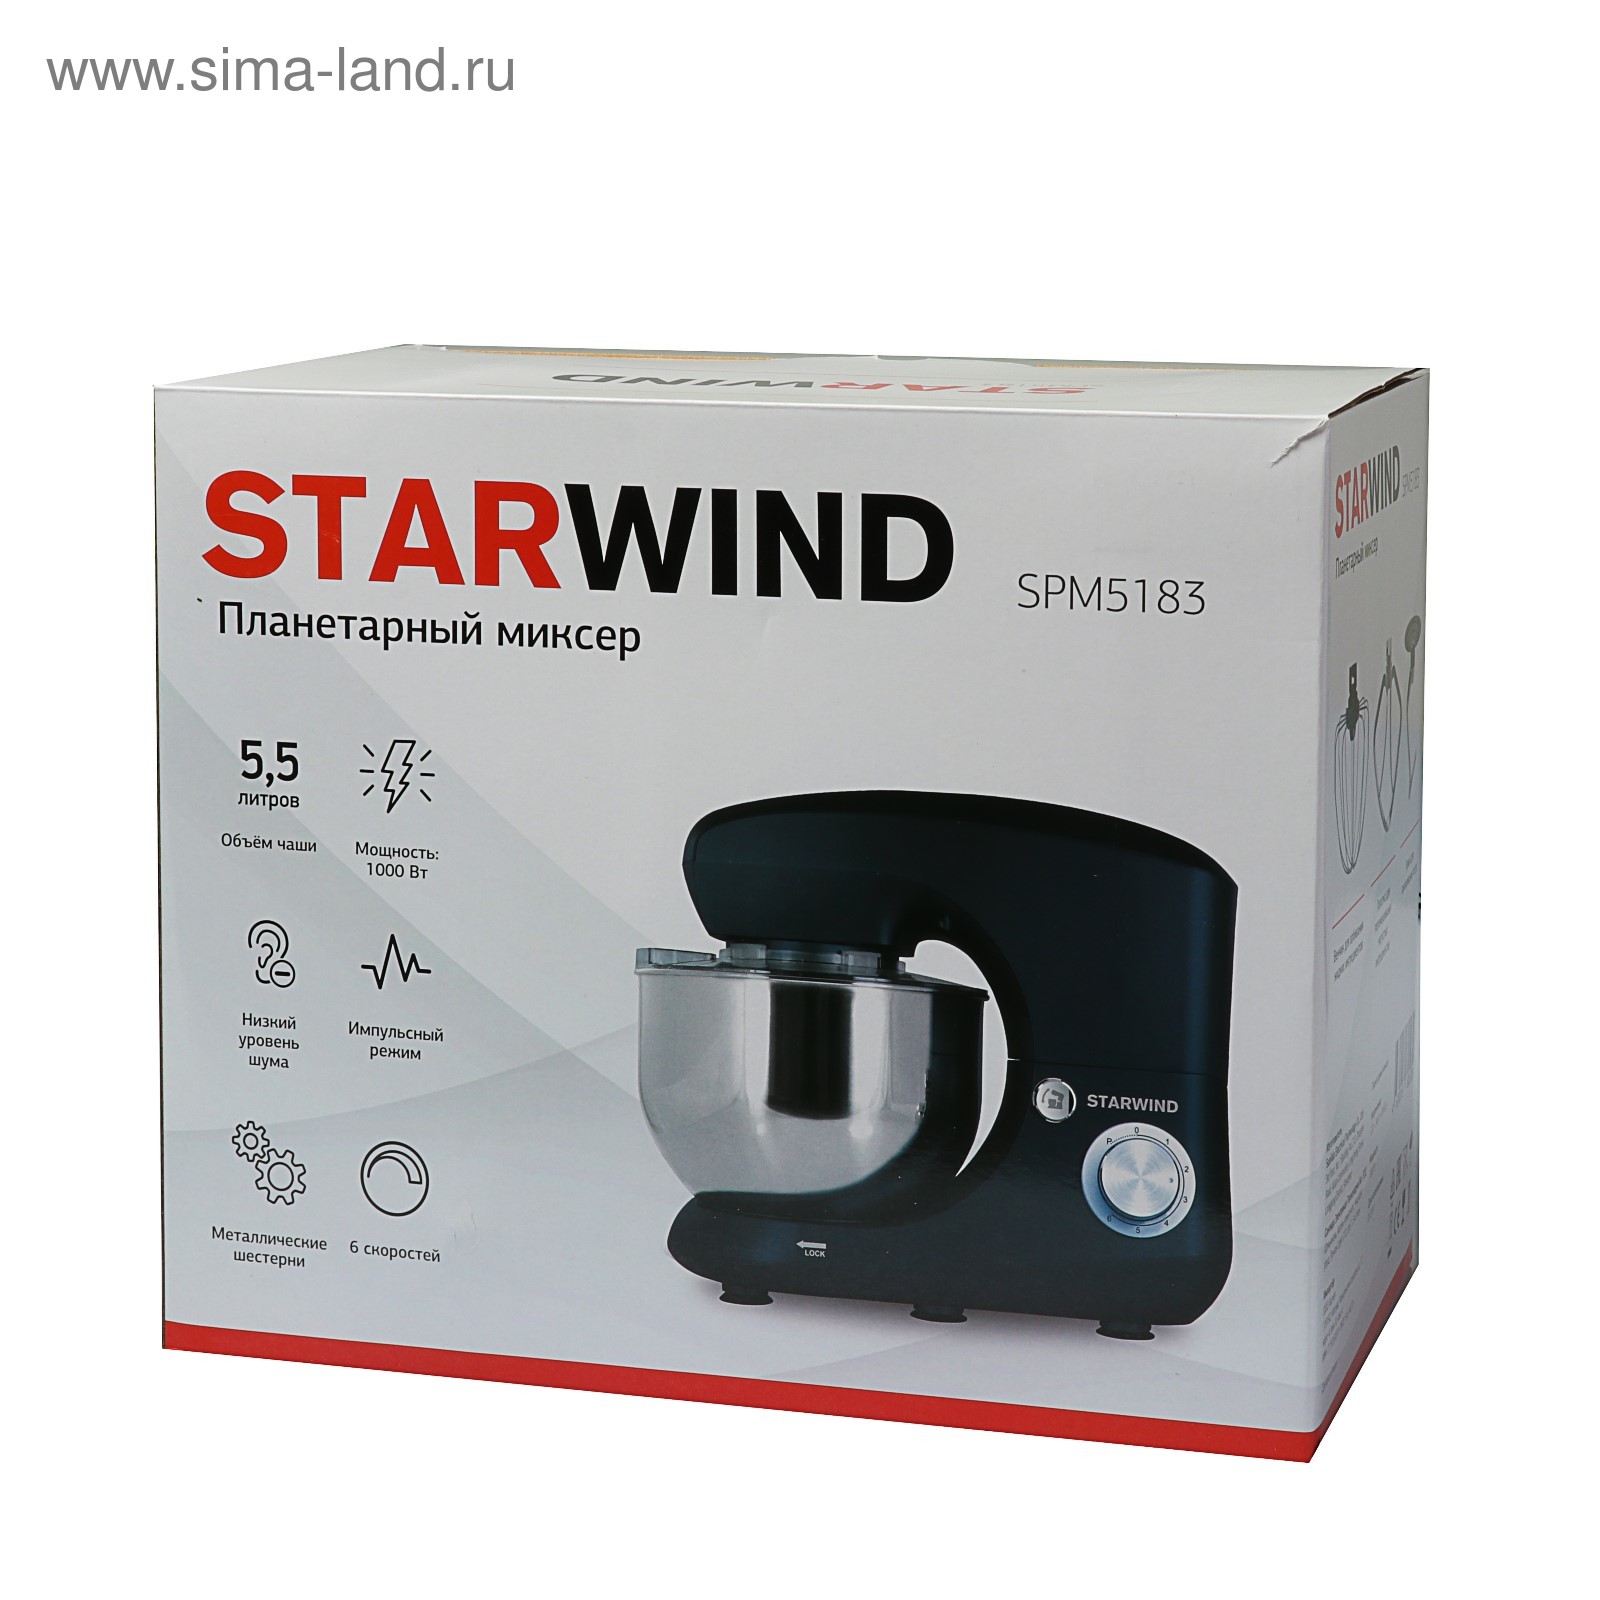 Планетарный миксер starwind spm5183